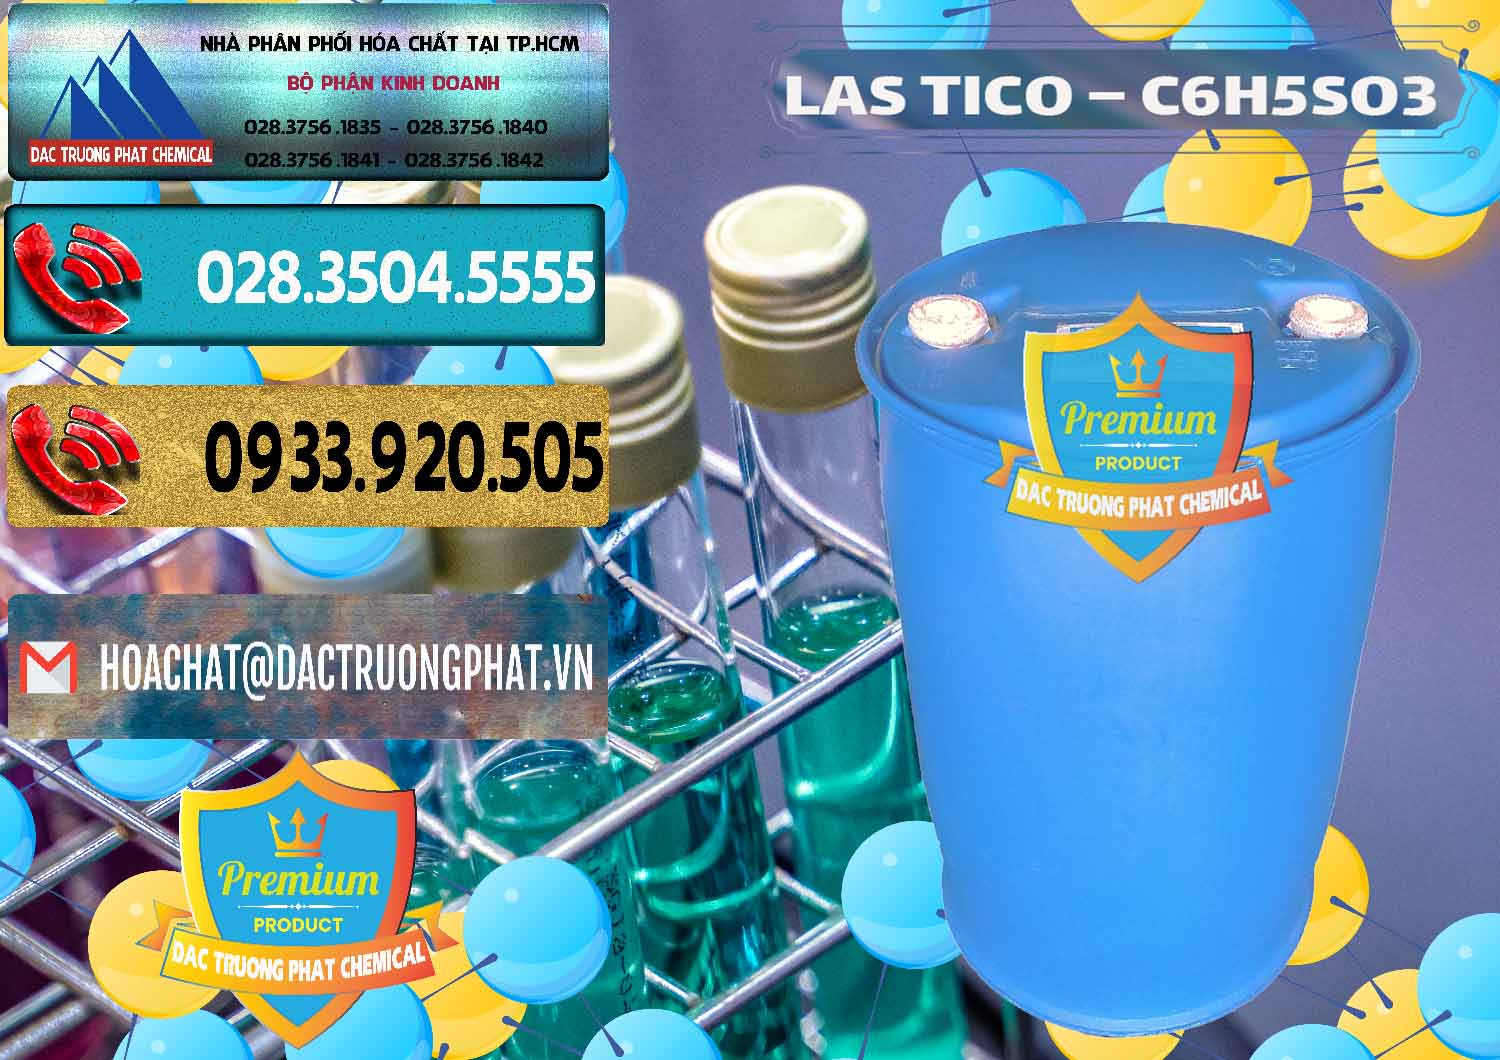 Cung cấp và kinh doanh Chất tạo bọt Las H Tico Việt Nam - 0190 - Nơi cung ứng & phân phối hóa chất tại TP.HCM - hoachatdetnhuom.com